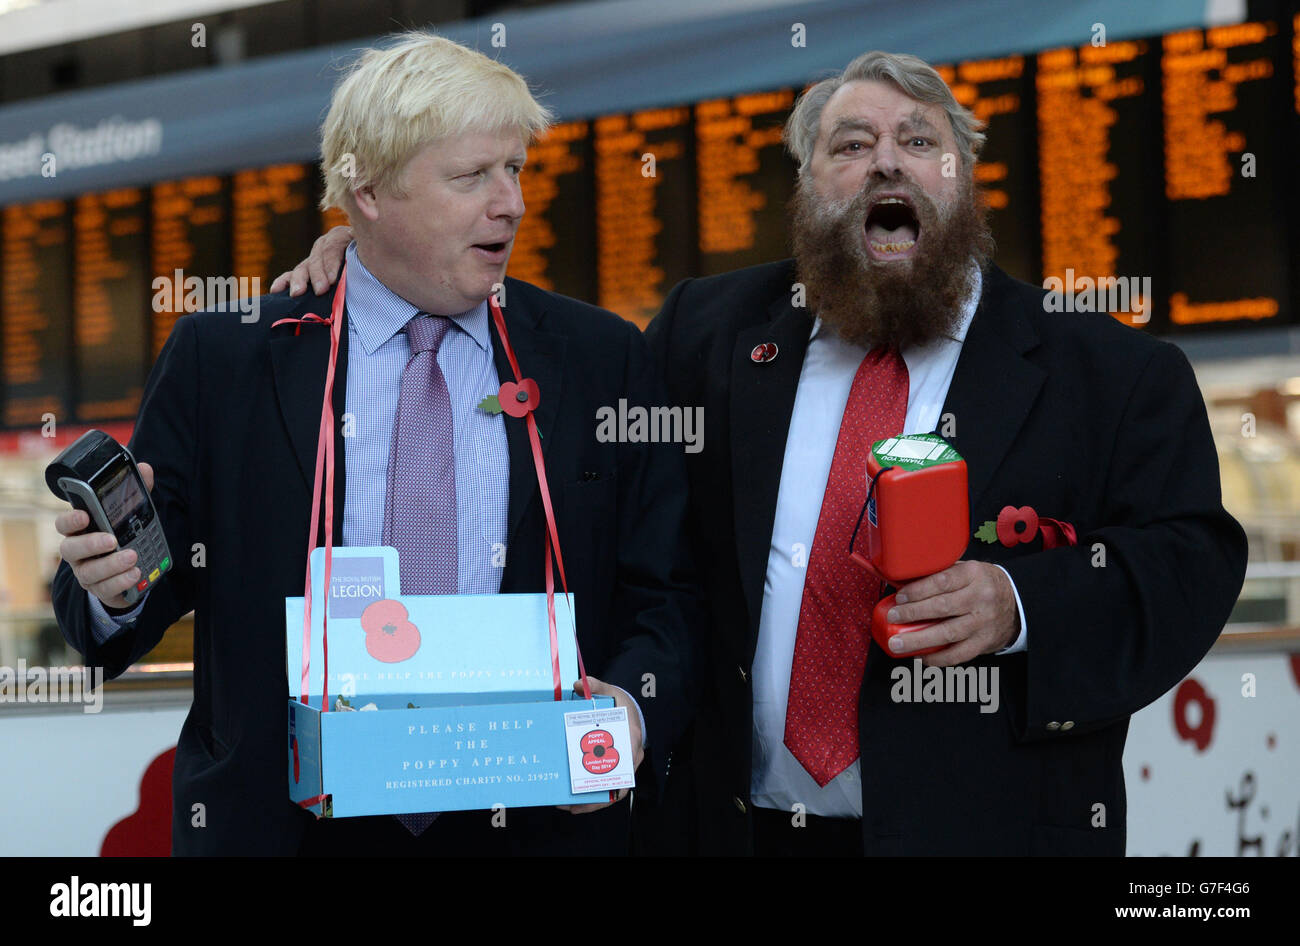 Il sindaco di Londra Boris Johnson (a sinistra) e l'attore Brian Beato vendono papaveri nella stazione di Liverpool Street nel centro di Londra. Foto Stock